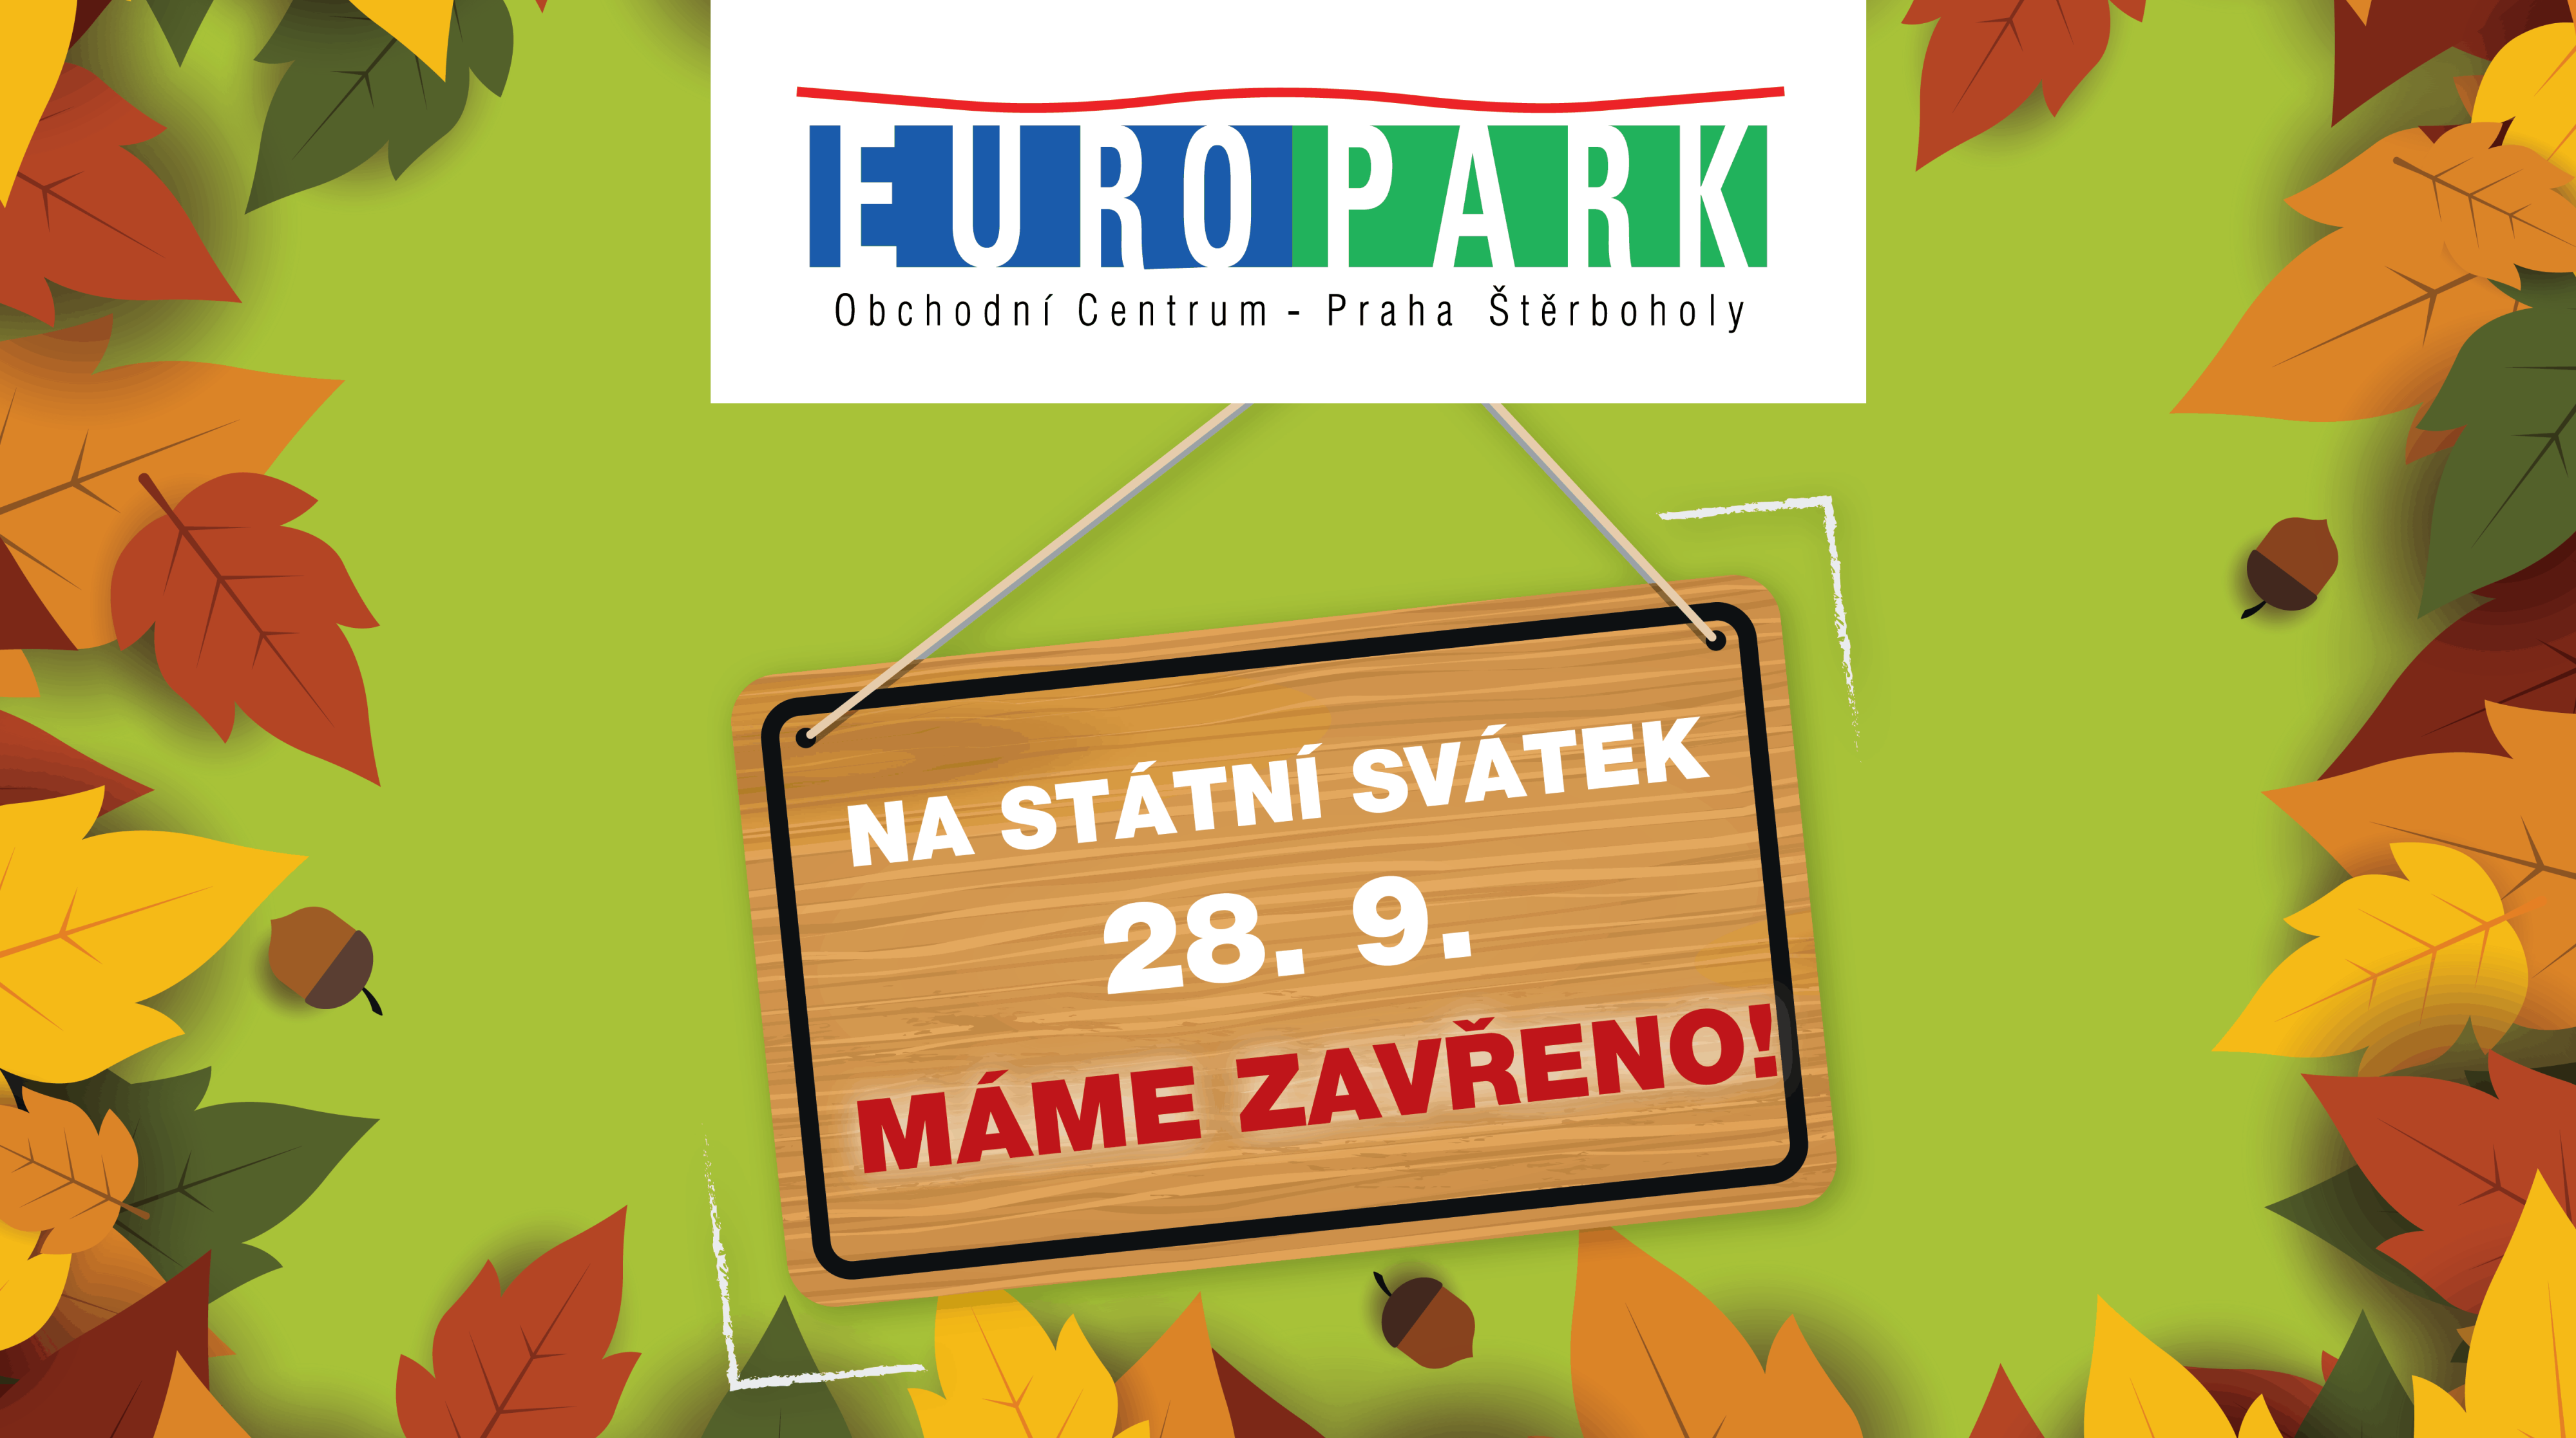 Na státní svátek 28.9. máme ZAVŘENO | Obchodní centrum Europark